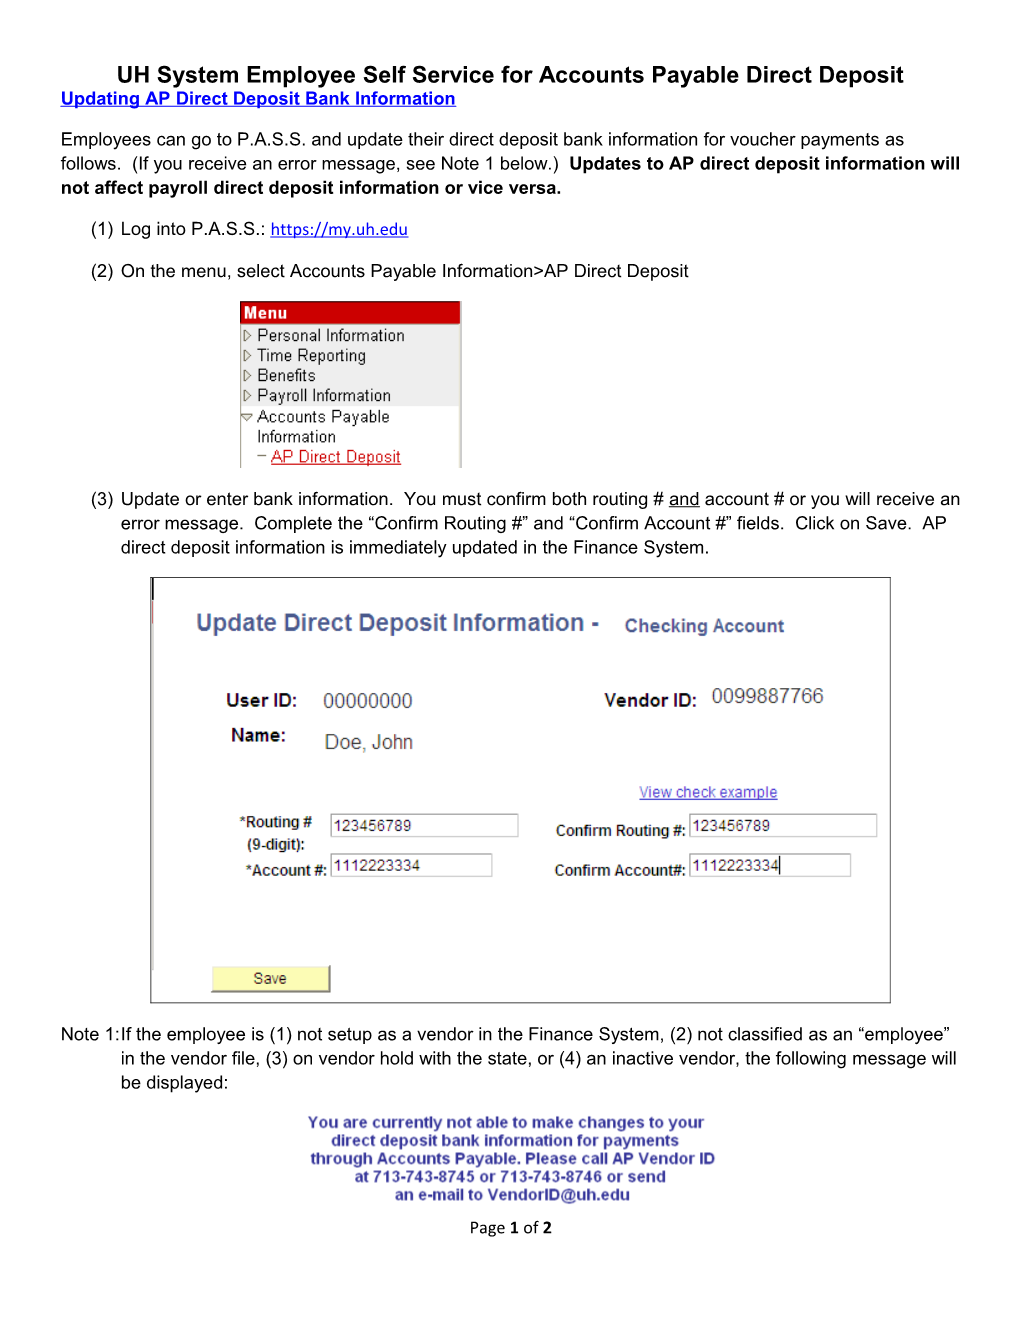 Updating AP Direct Deposit Bank Information